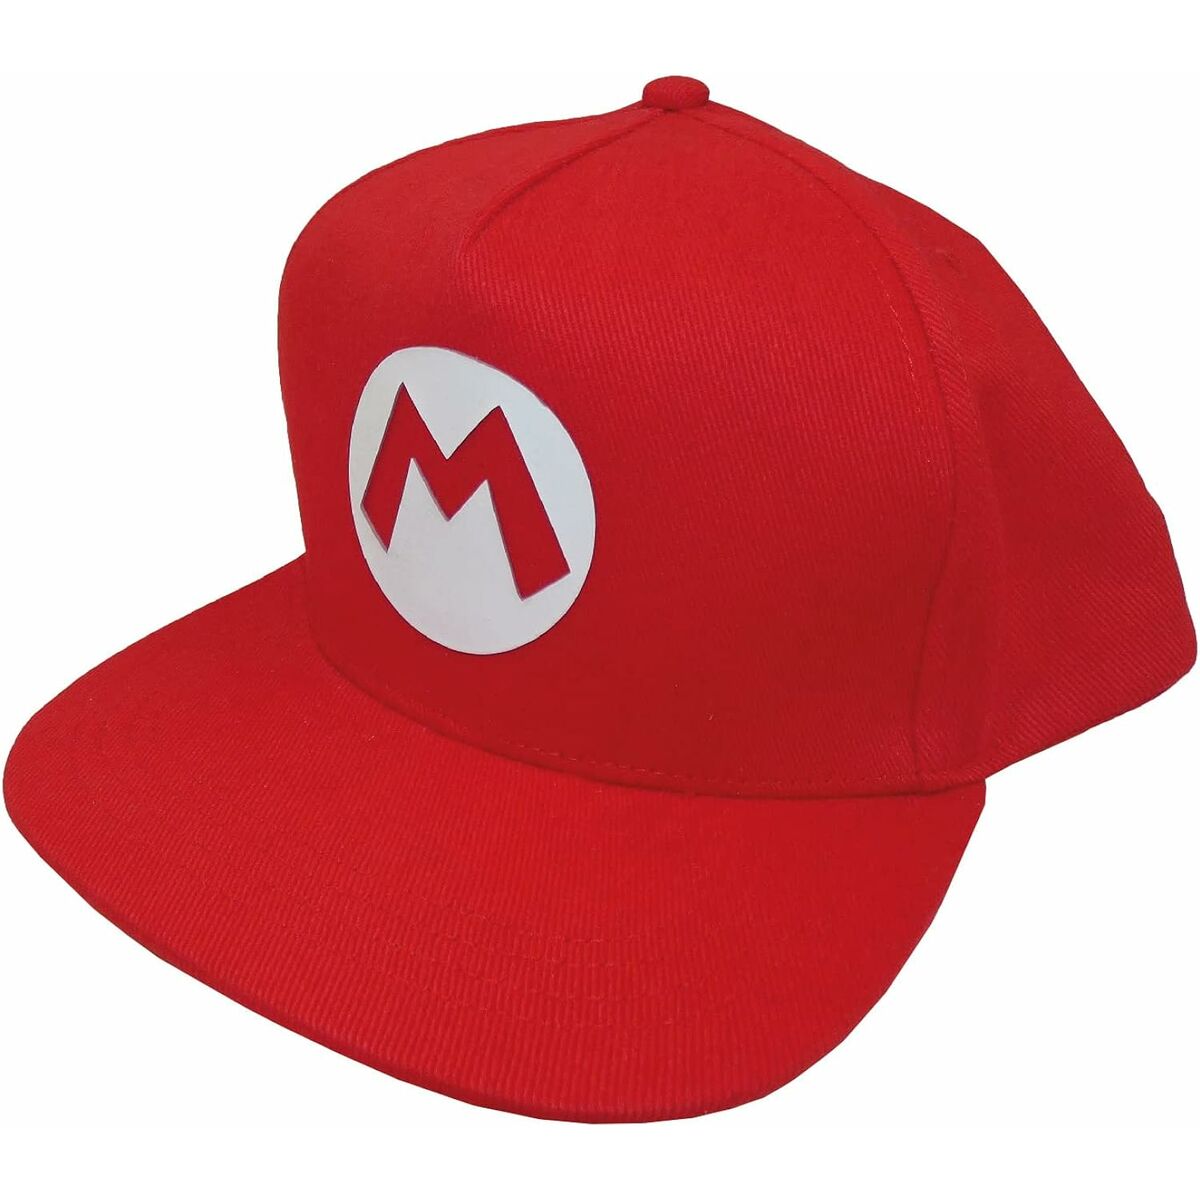 Unisex hat Super Mario Badge 58 cm Red One size